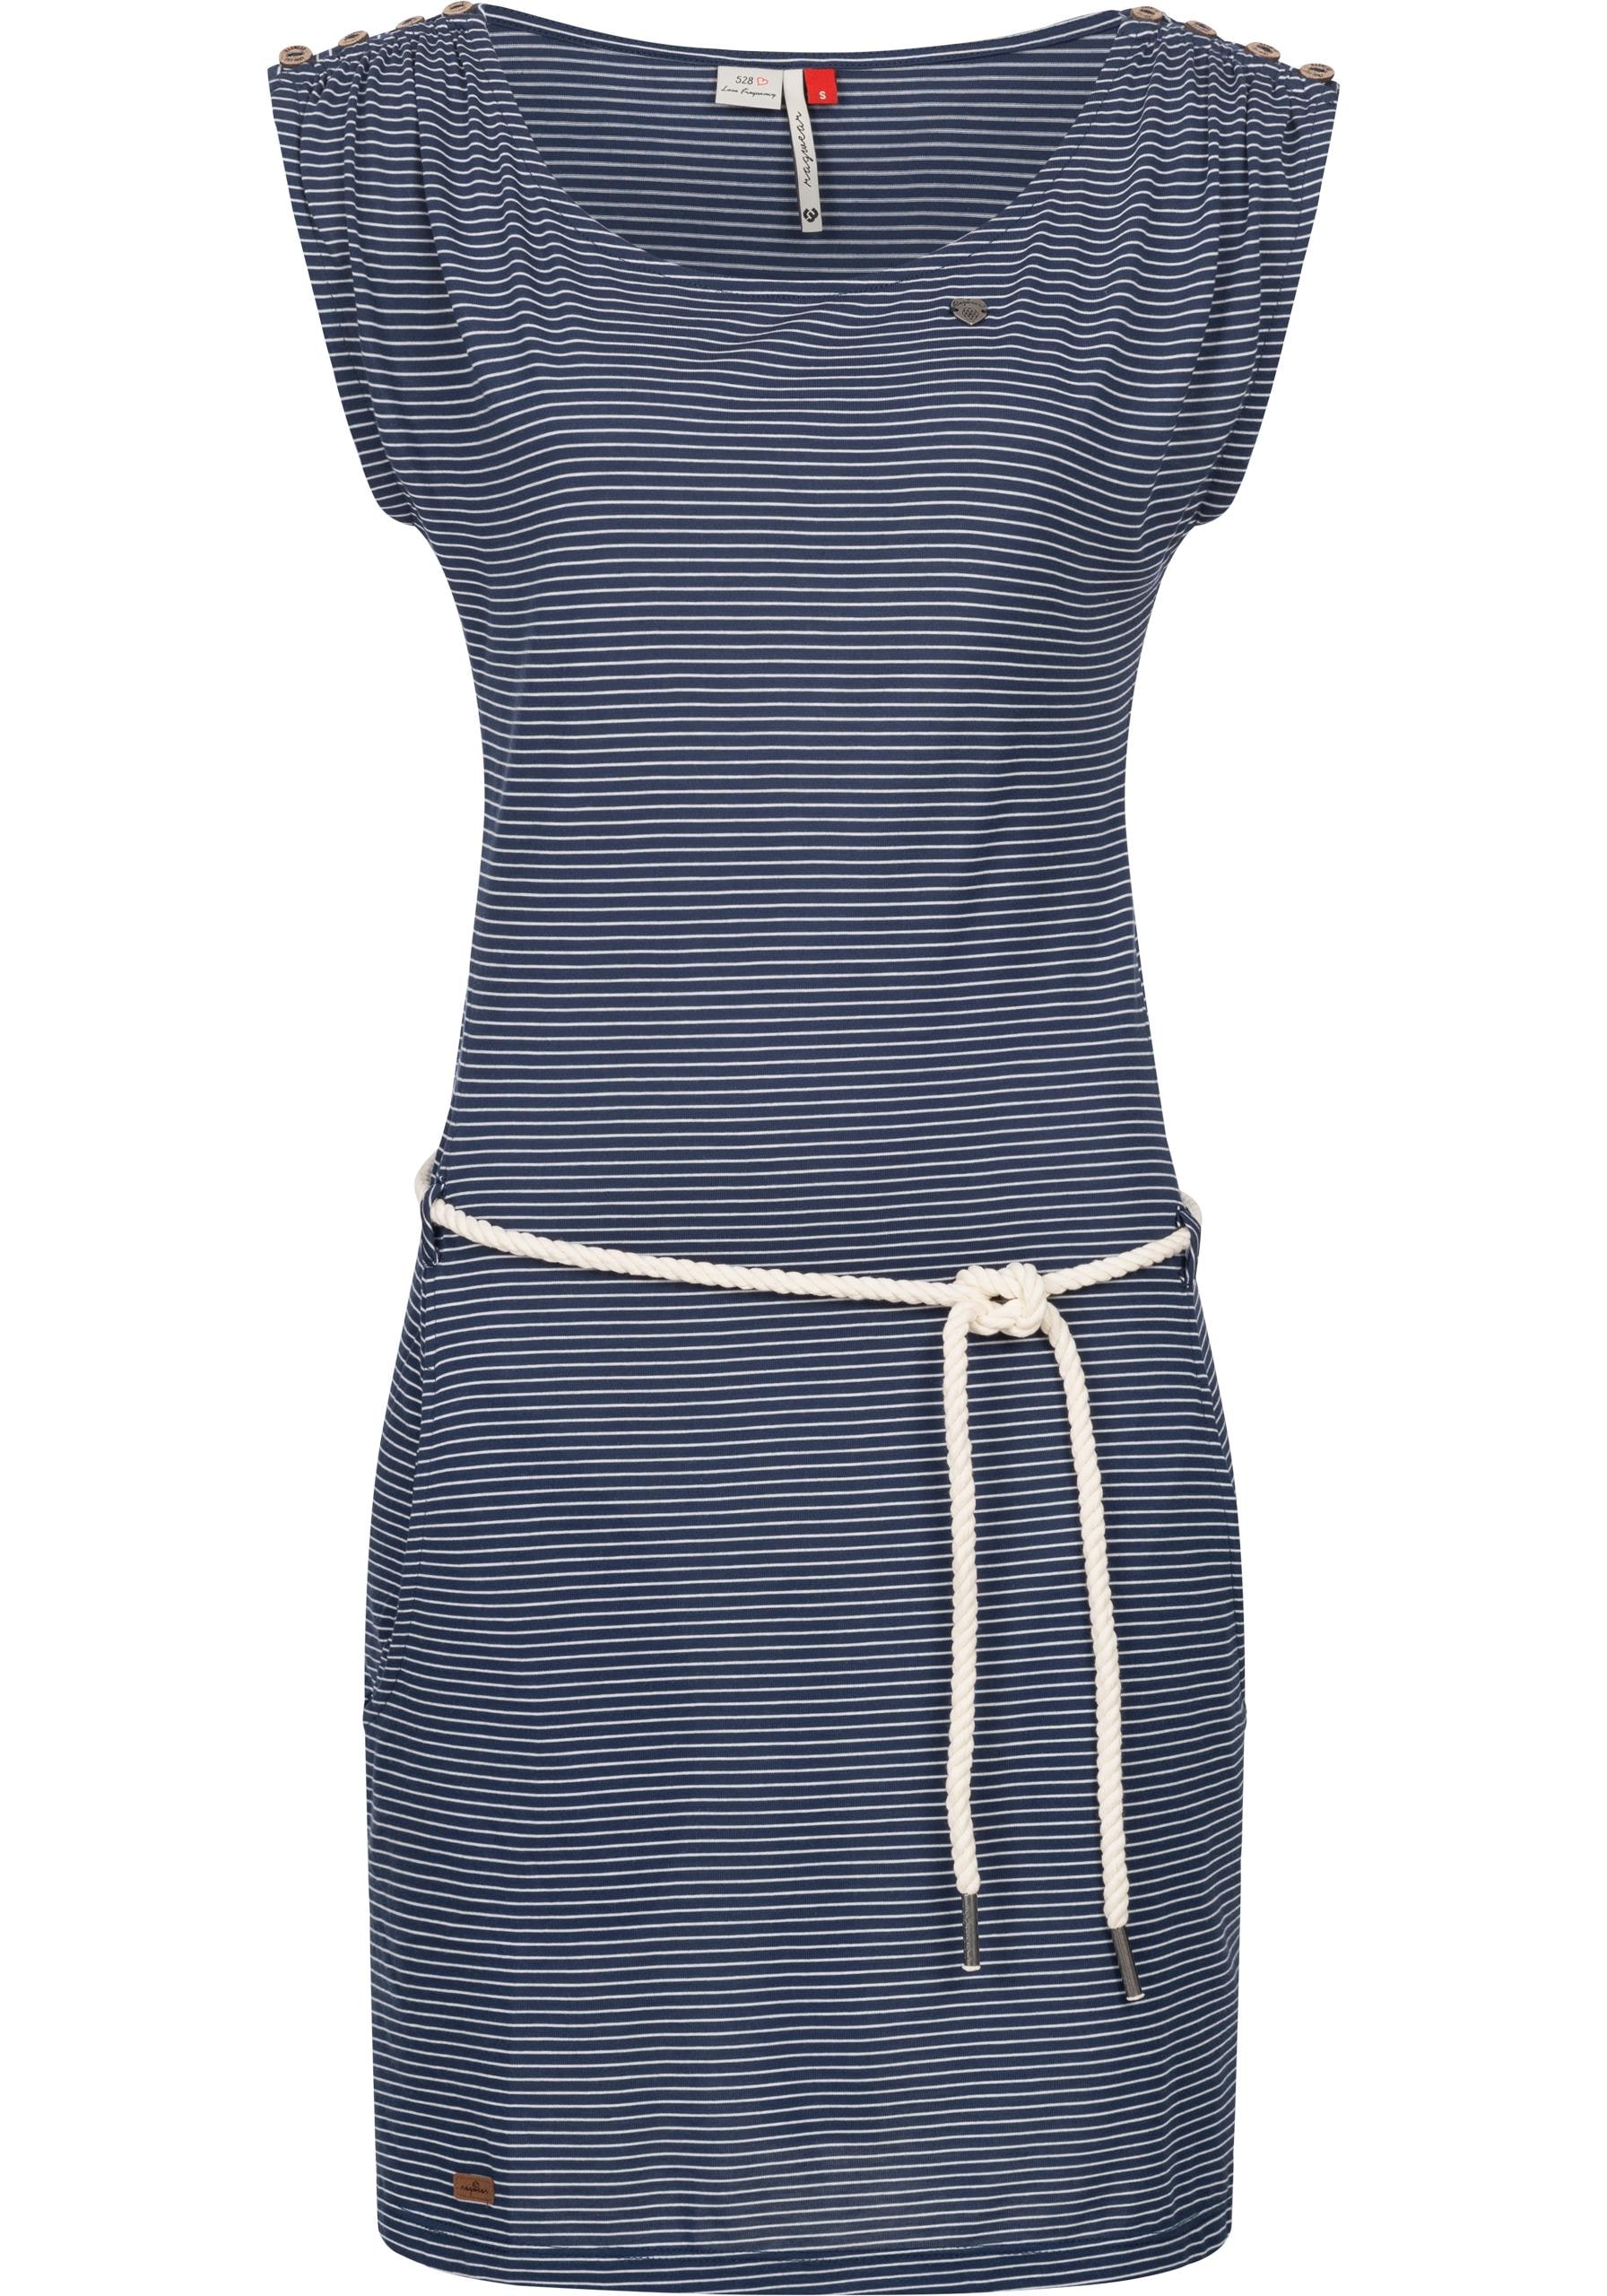 Ragwear Shirtkleid »Chego Stripes Intl.«, Streifen-Muster | stylisches Sommerkleid walking I\'m mit shoppen